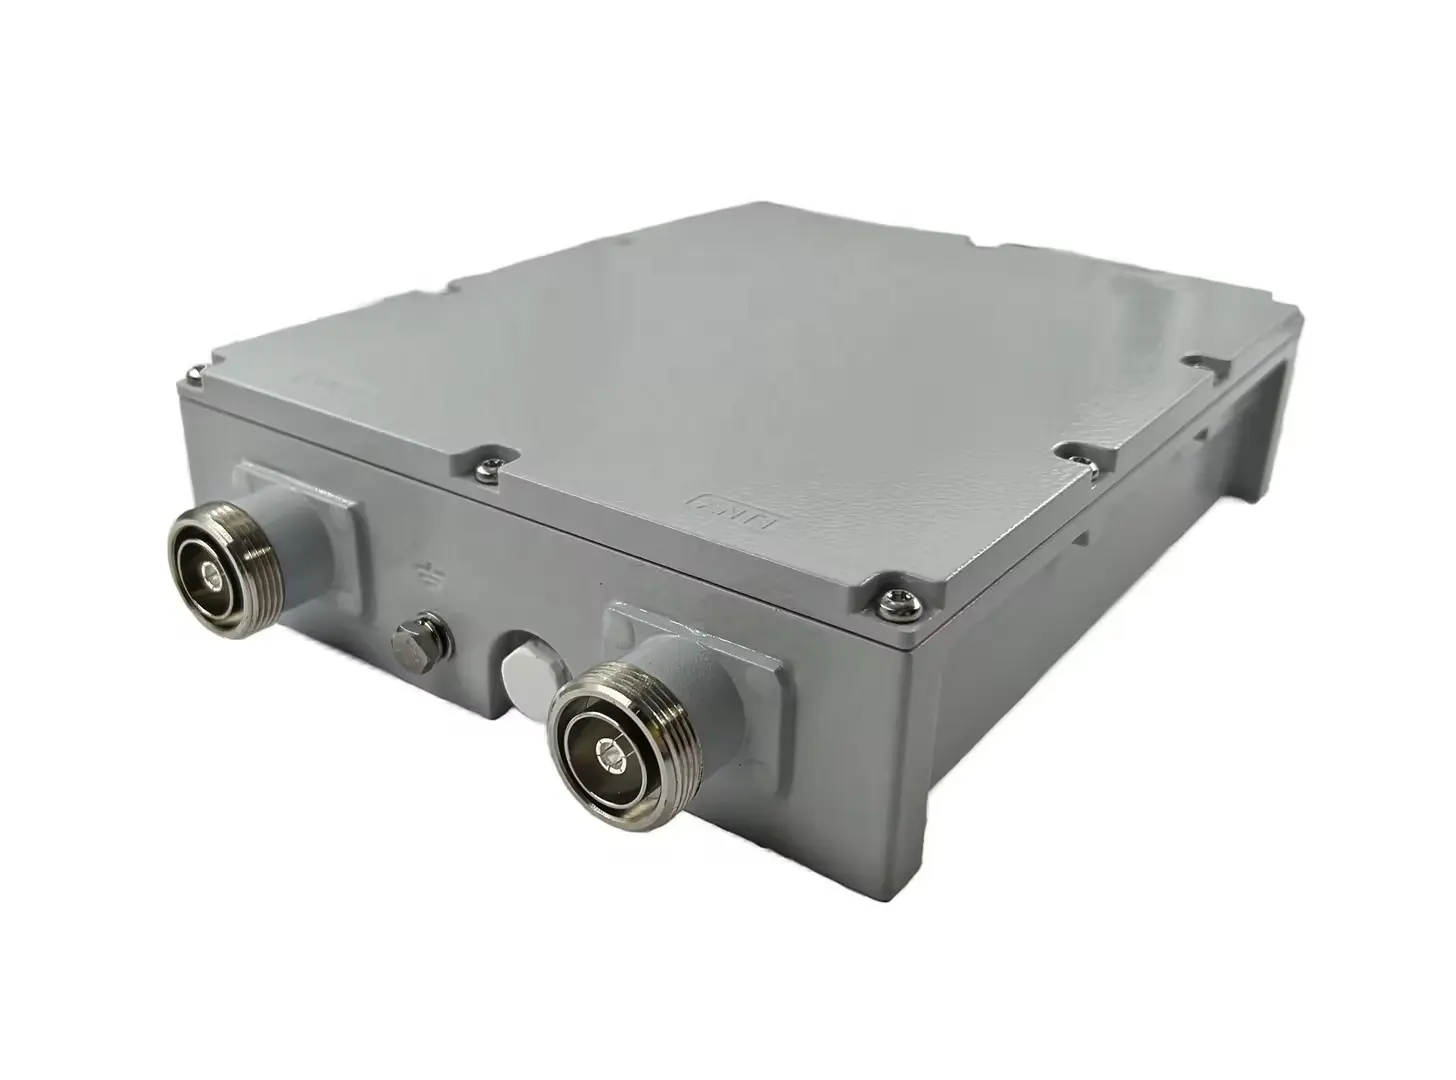 HTMICROWAVE bajo PIM -150dBc 885 - 960MHz DIN-hembra RF filtro para Estación Base equipo aplicación inalámbrica